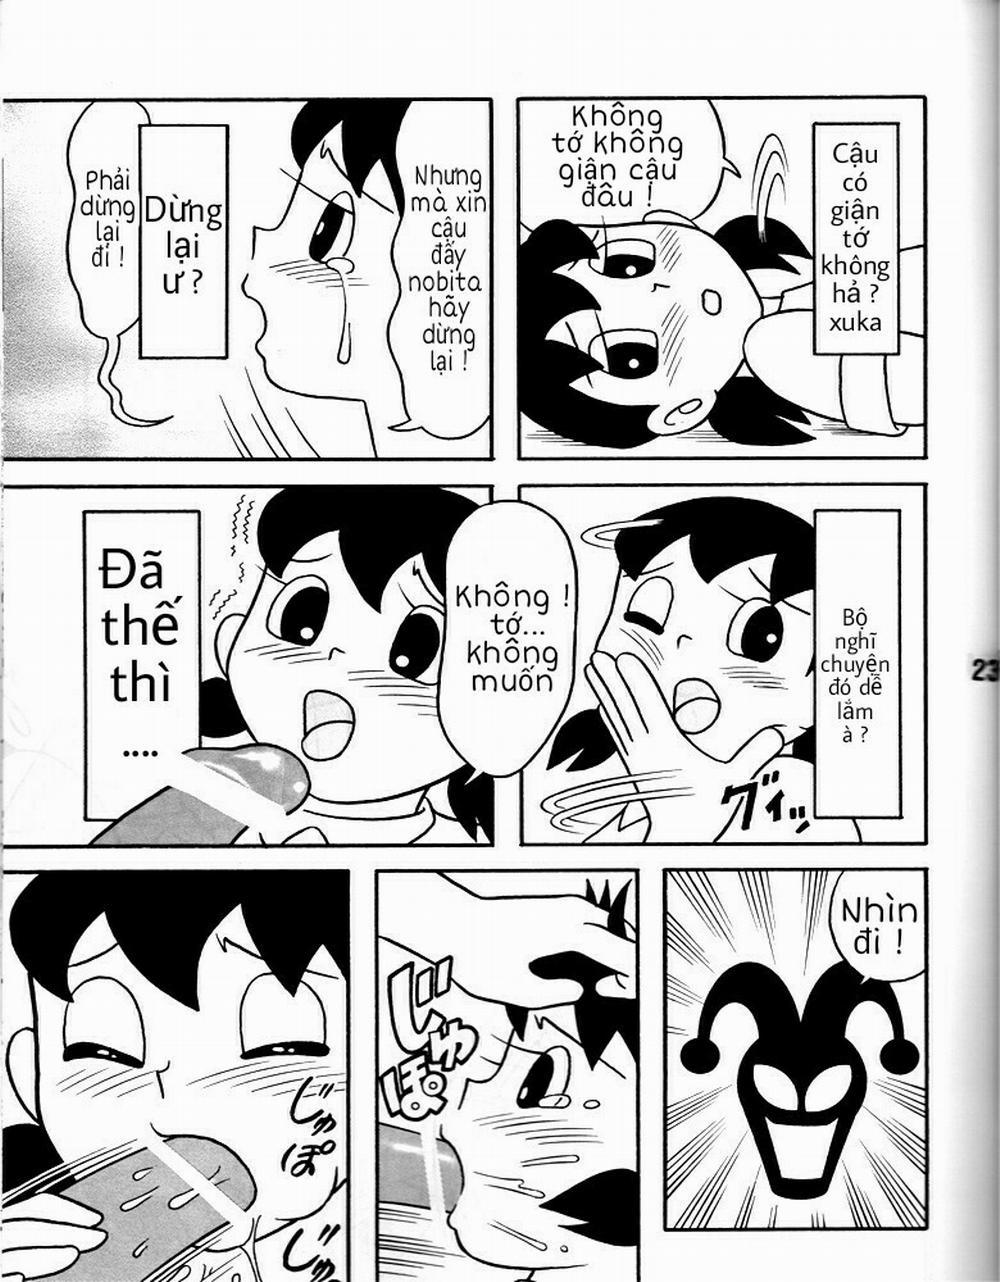 Tuyển Tập Doraemon Doujinshi 18+ Chương 8 H chi u qu sa t ng Trang 4